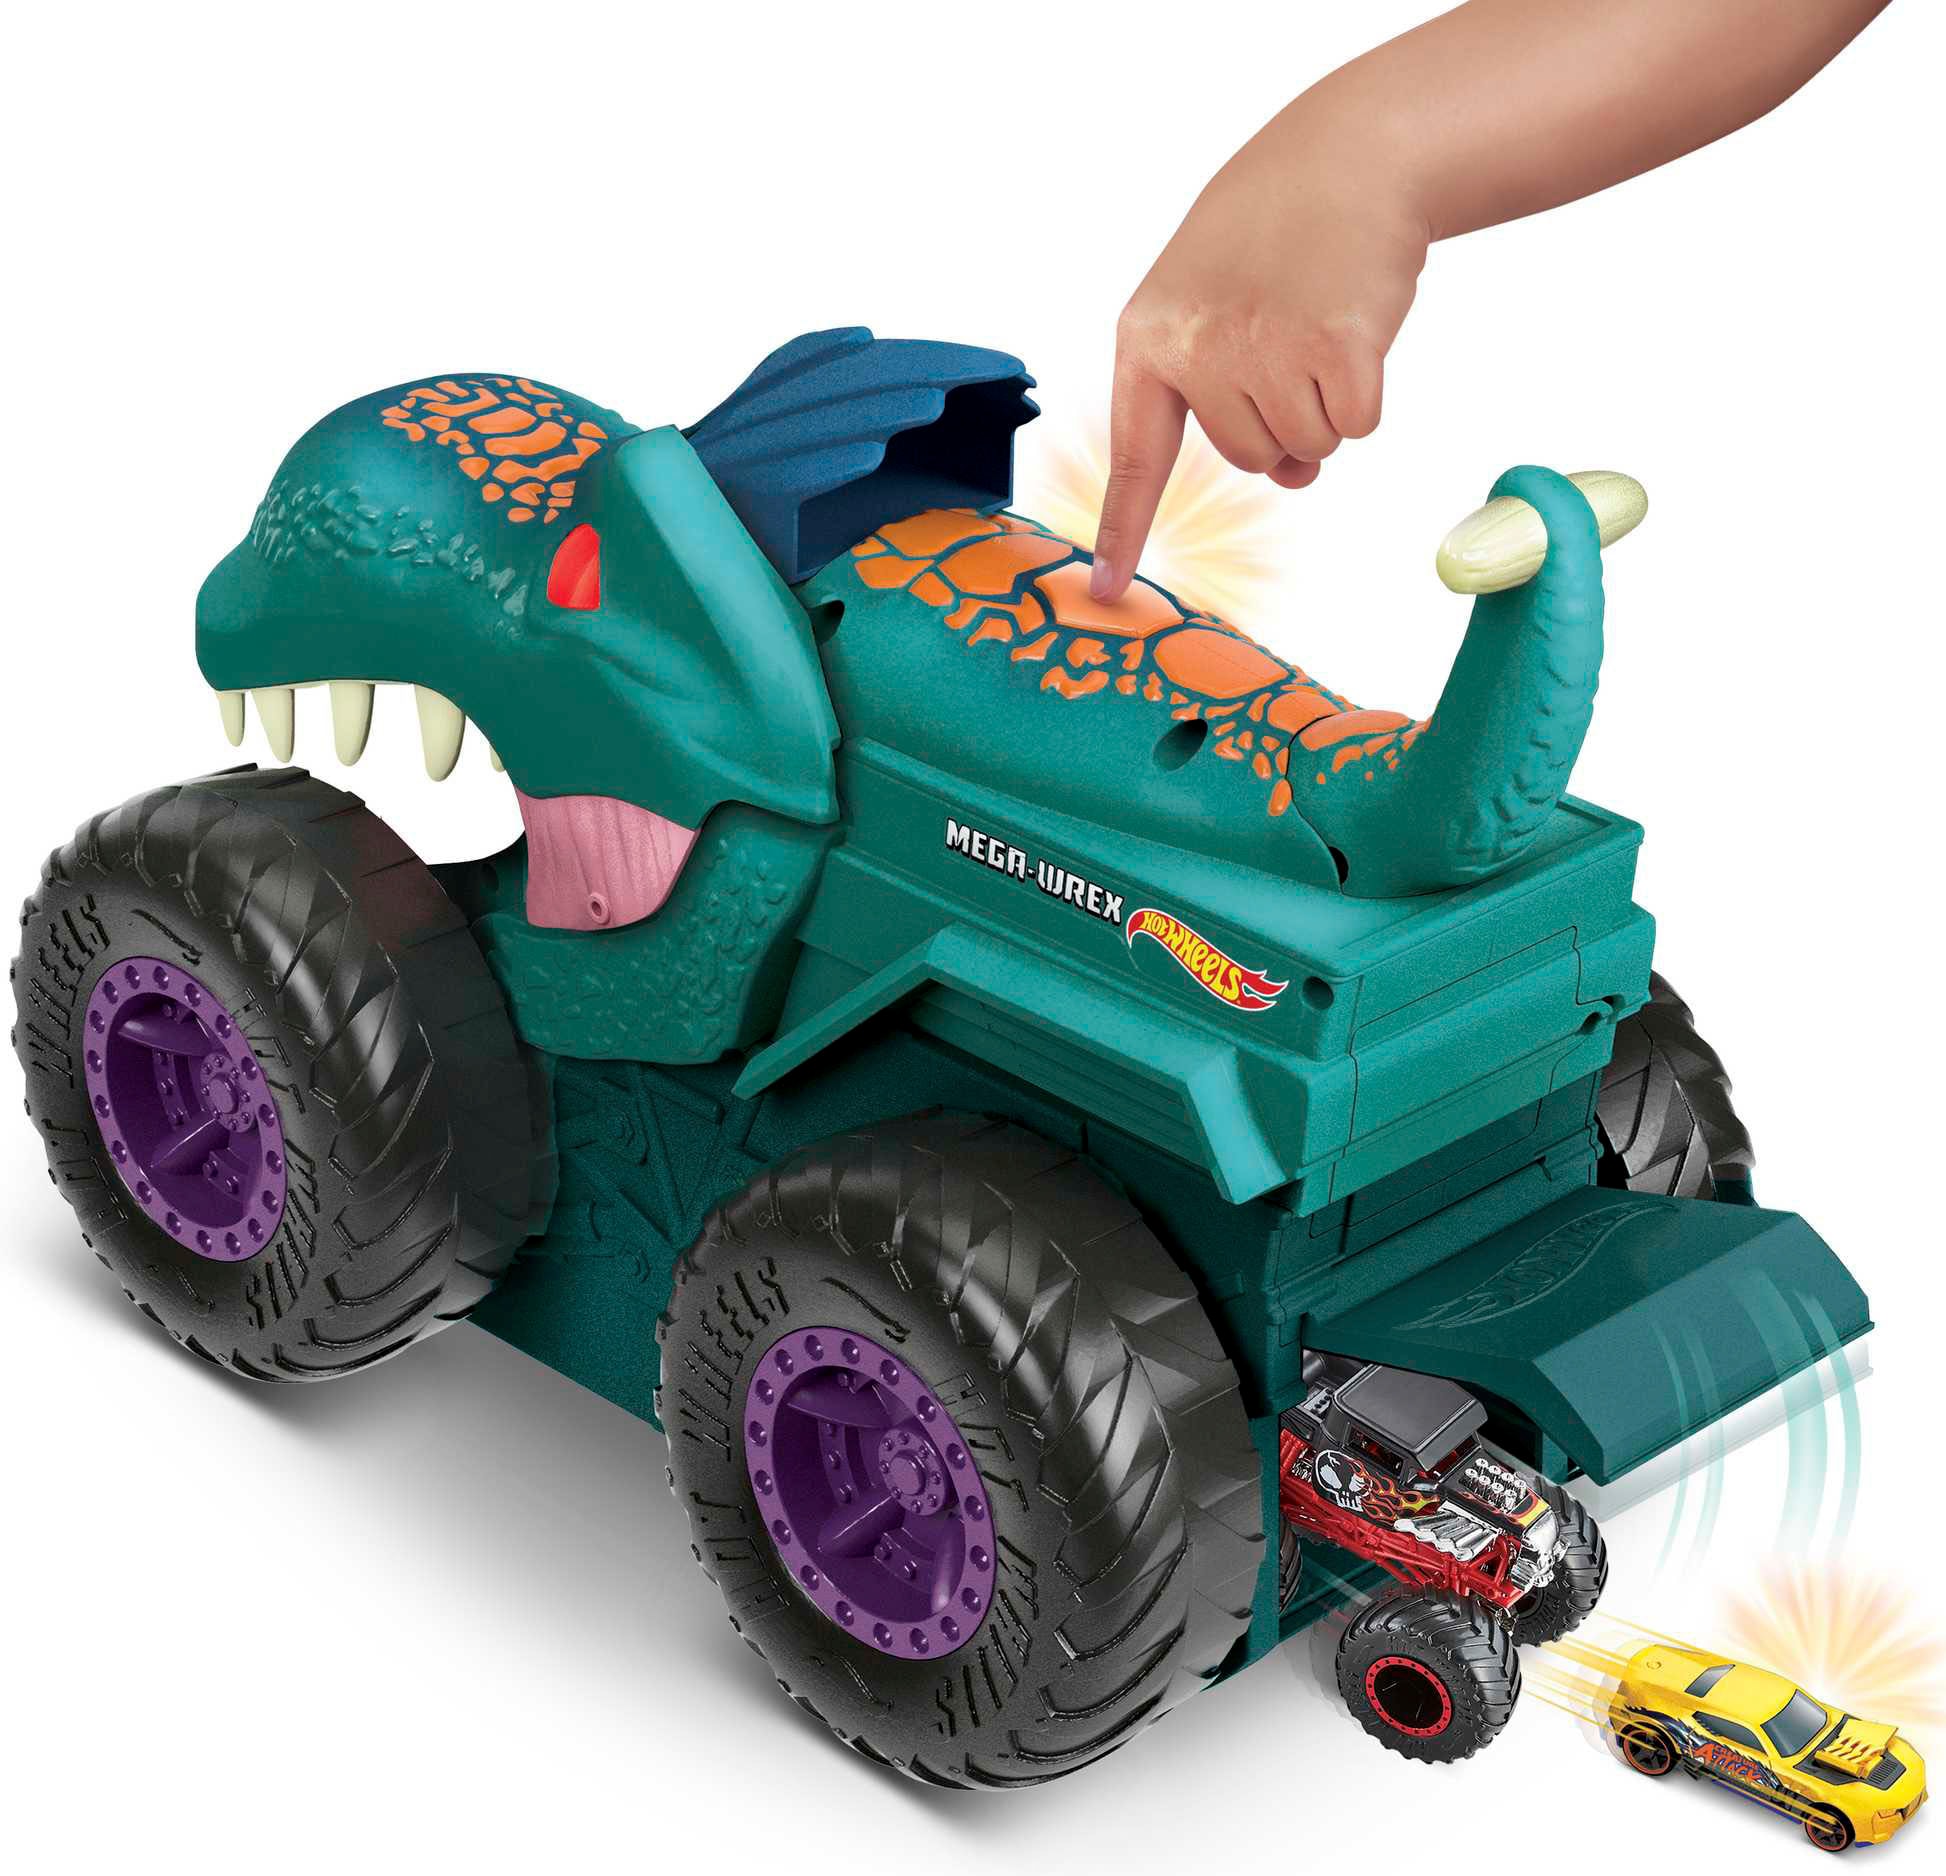 Hot Wheels Spielzeug-Monstertruck »Mega-Wrex«, mit Licht und Sound